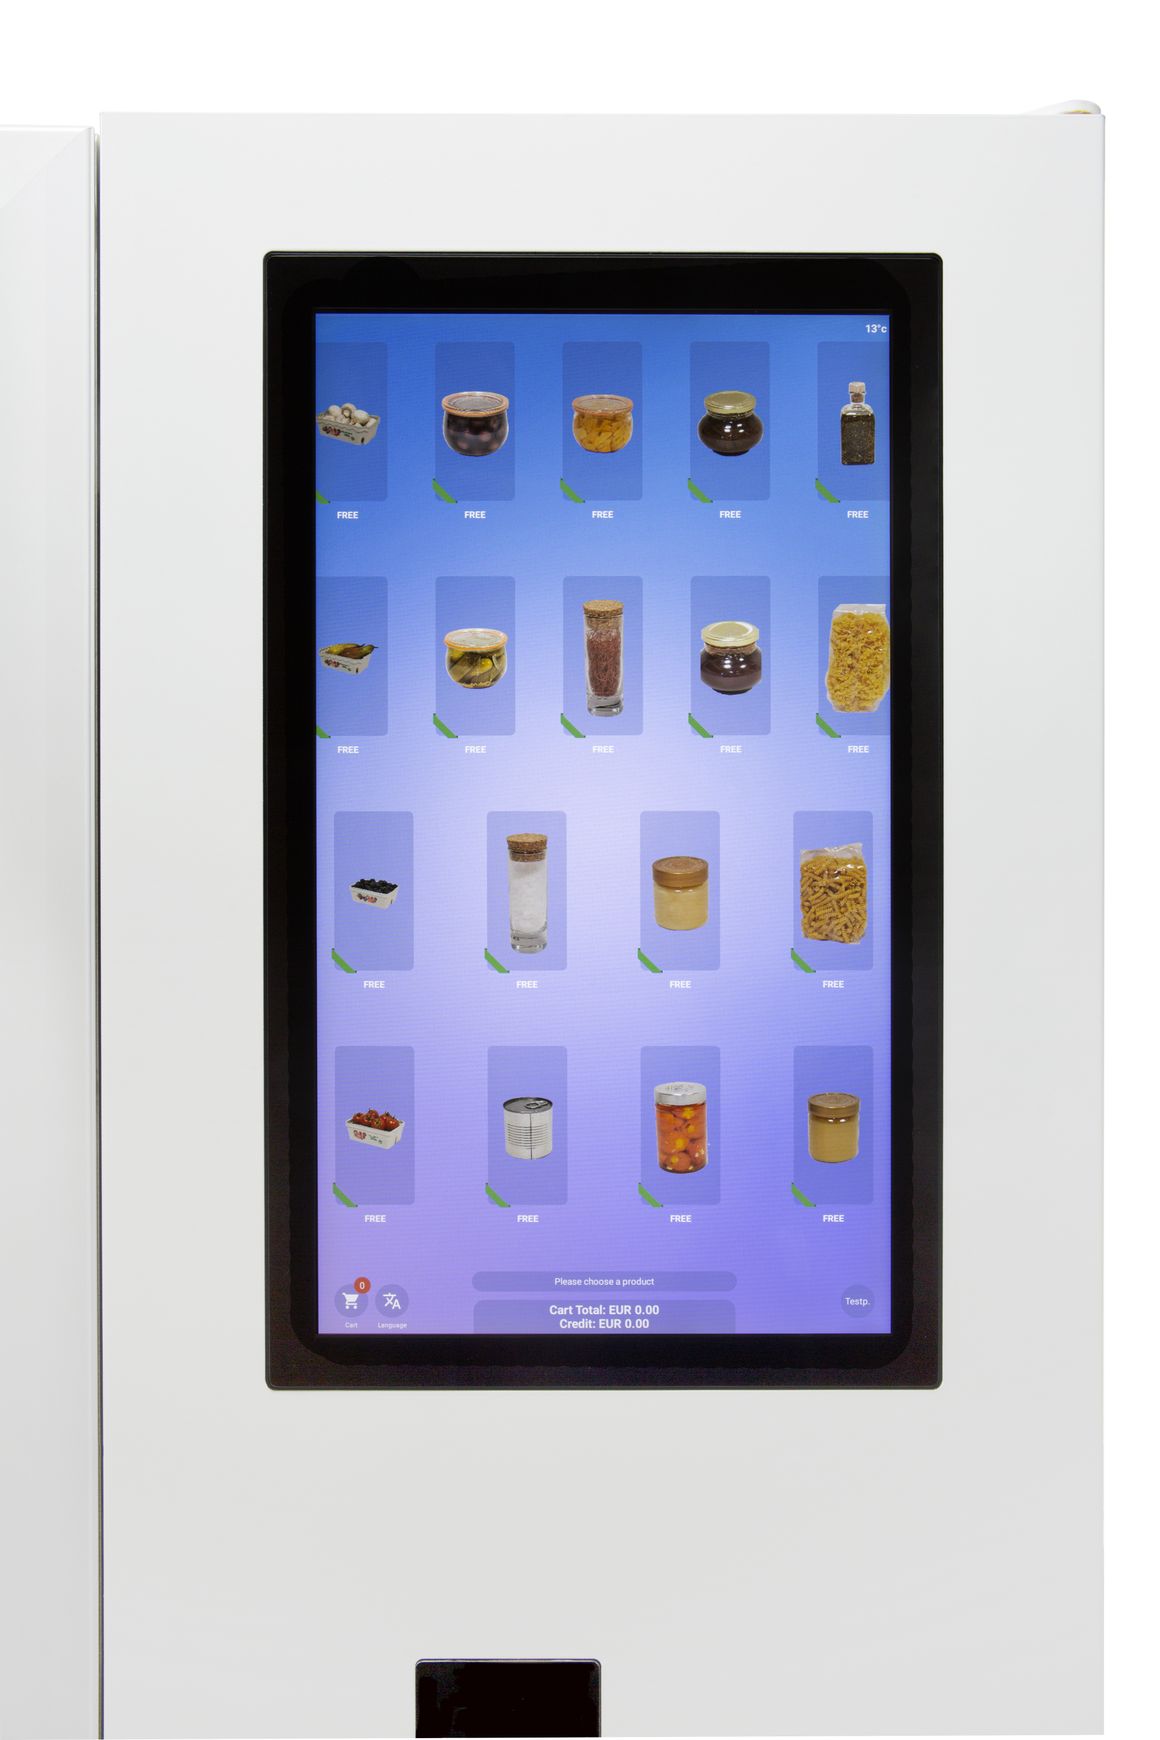 Großes Touchscreen Display am Lemgo Verkaufsautomat